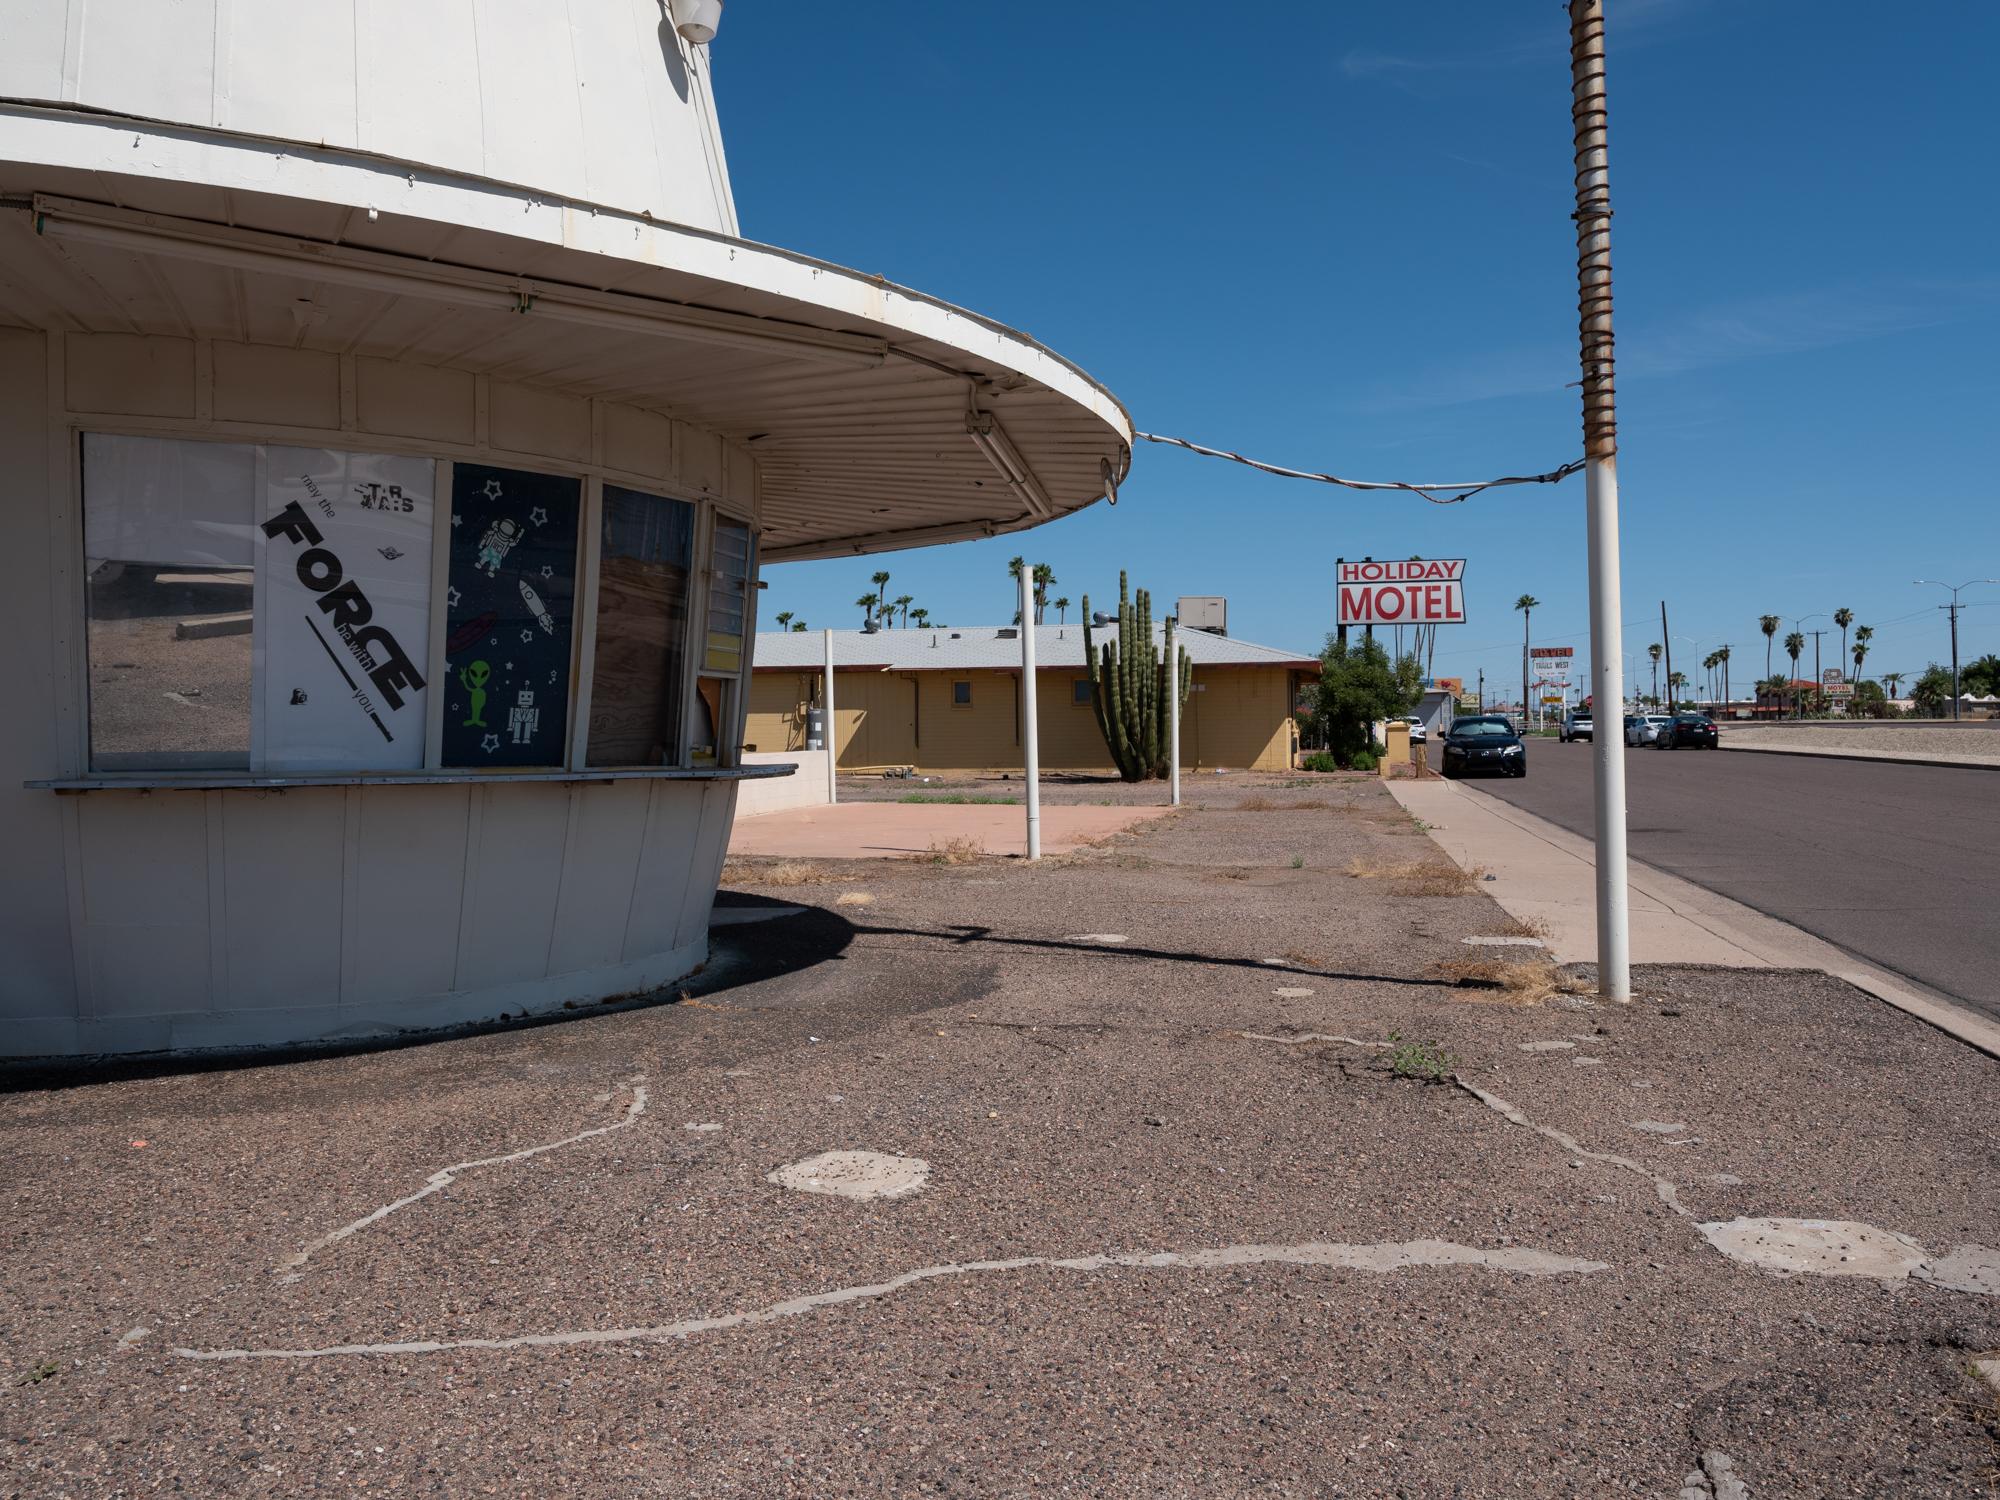 New Arizonans - HuffPost - Street scene in Mesa, Arizona.